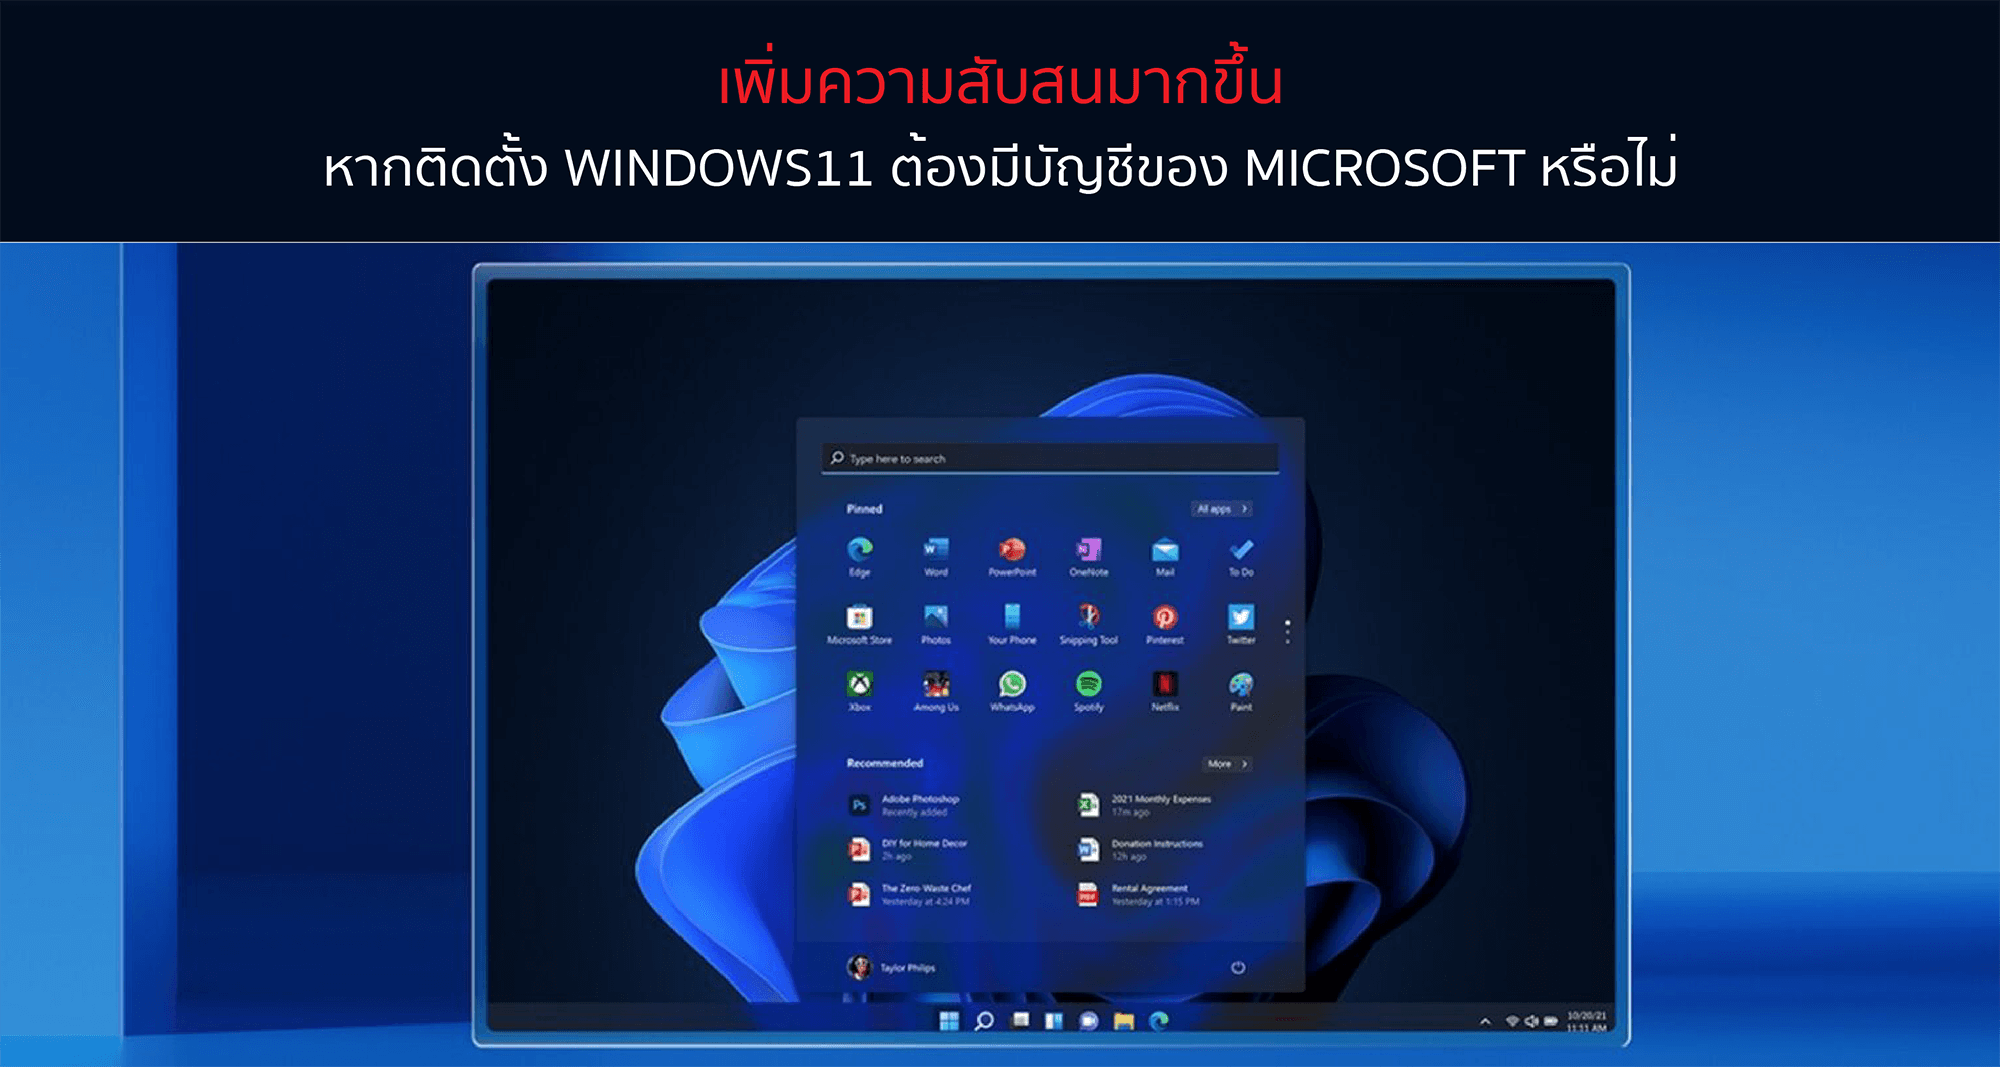 เพิ่มความสับสนมากขึ้น หากติดตั้ง Windows11 ต้องมีบัญชีของ Microsoft หรือไม่